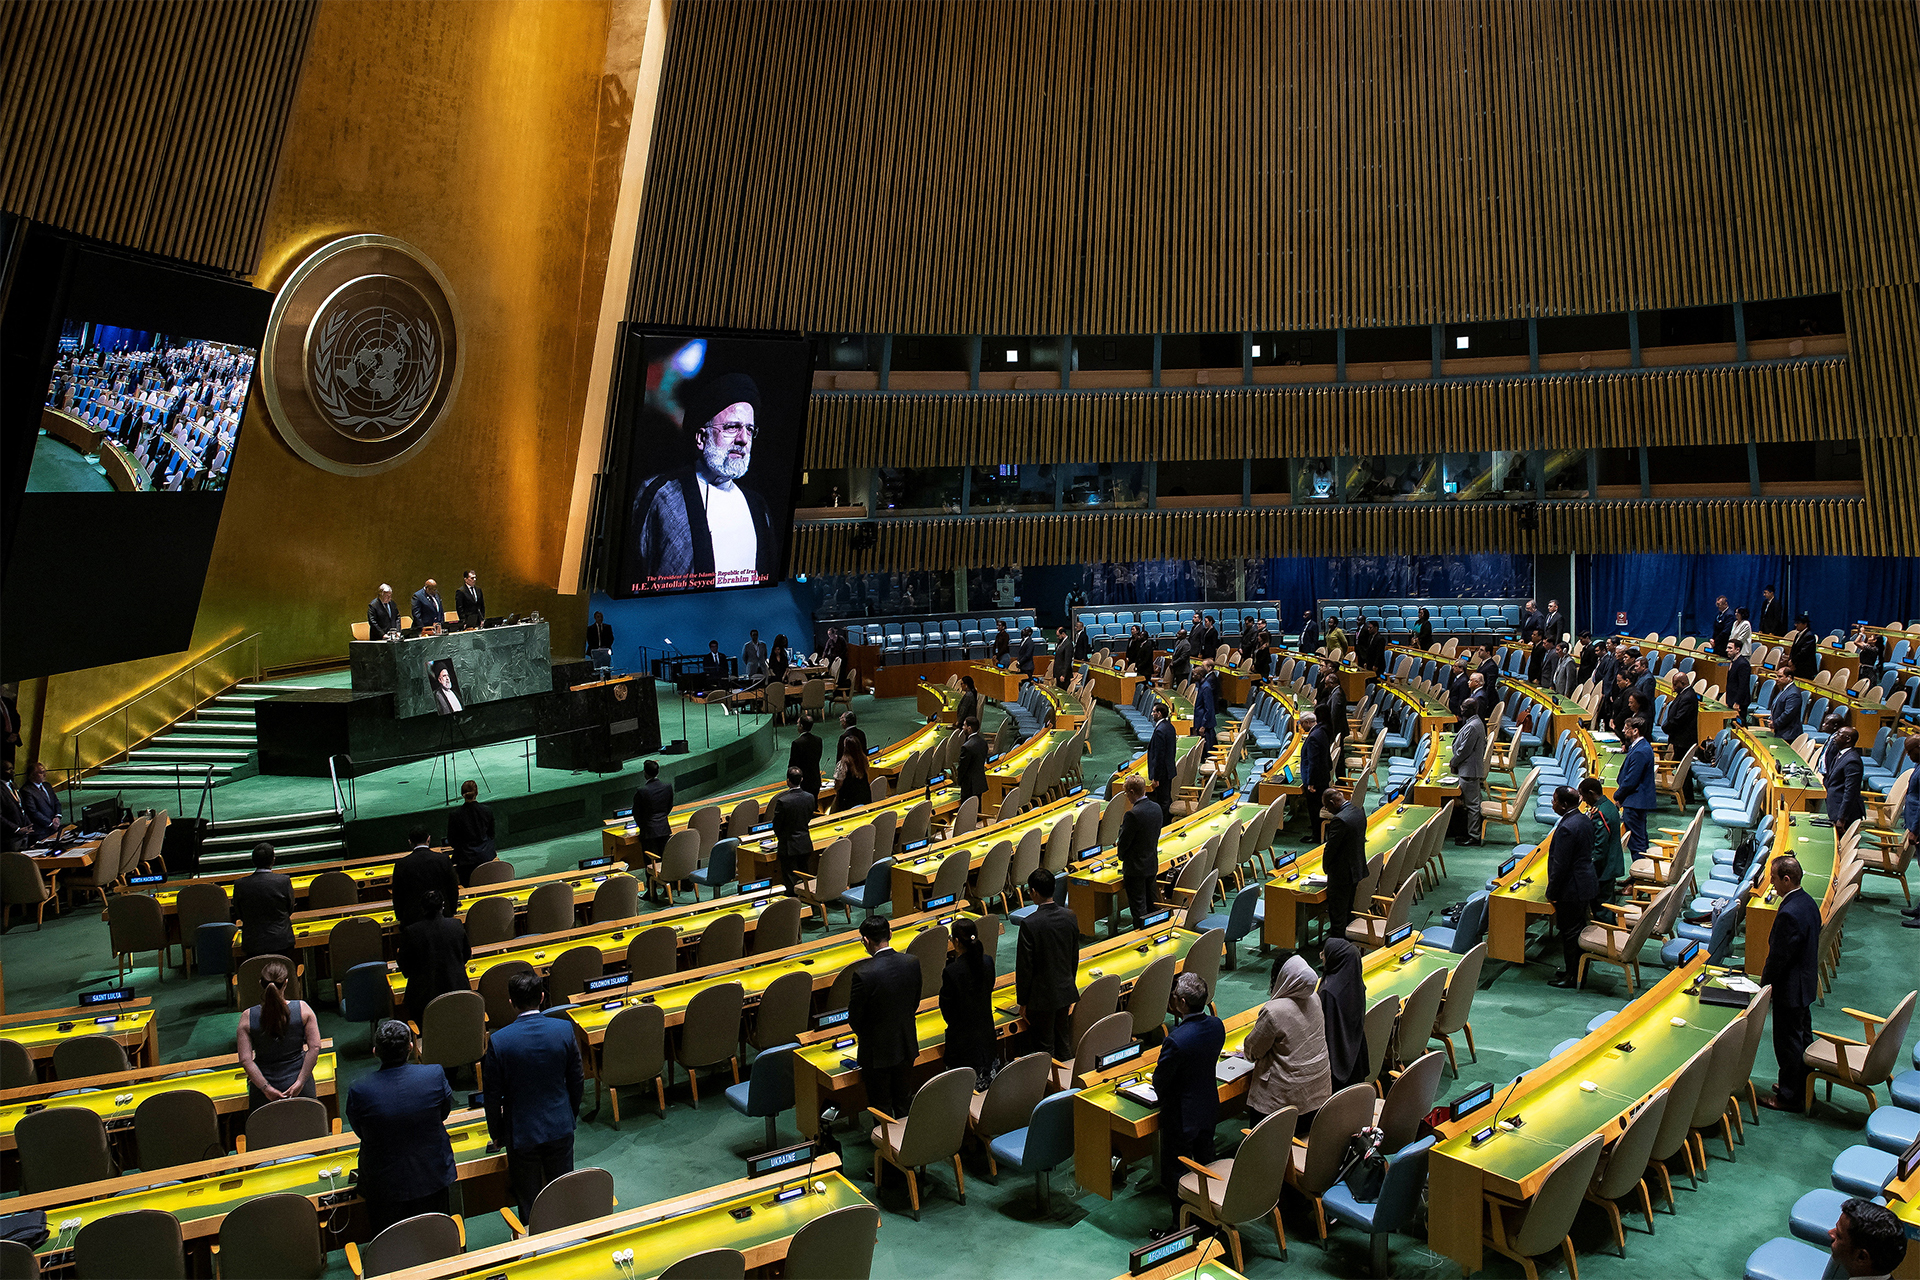 الأمم المتحدة تكرّم إبراهيم رئيسي فكيف ردت أميركا وفرنسا وإسرائيل؟ | أخبار – البوكس نيوز